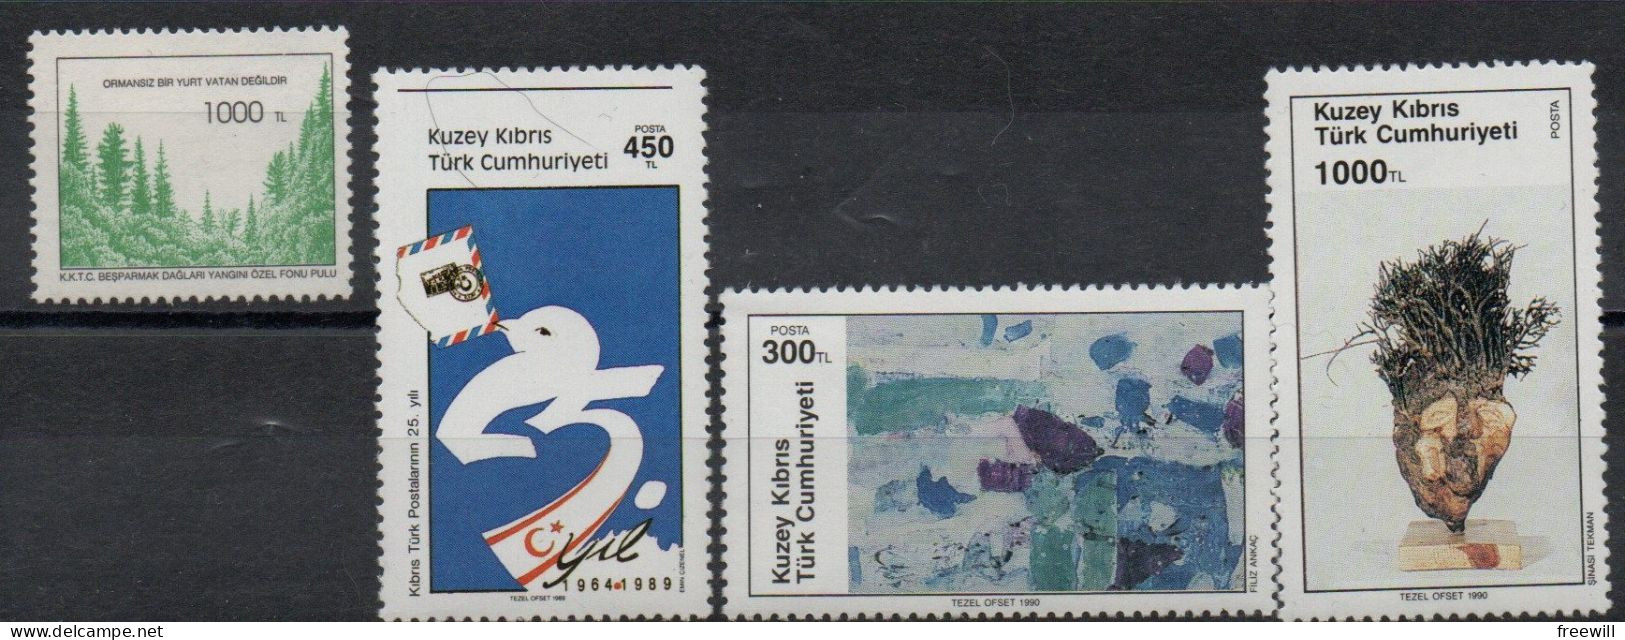 Chypre Turque - Turkish Cyprus Timbres Divers - Various Stamps -Verschillende Postzegels XXX 1989 - Ongebruikt